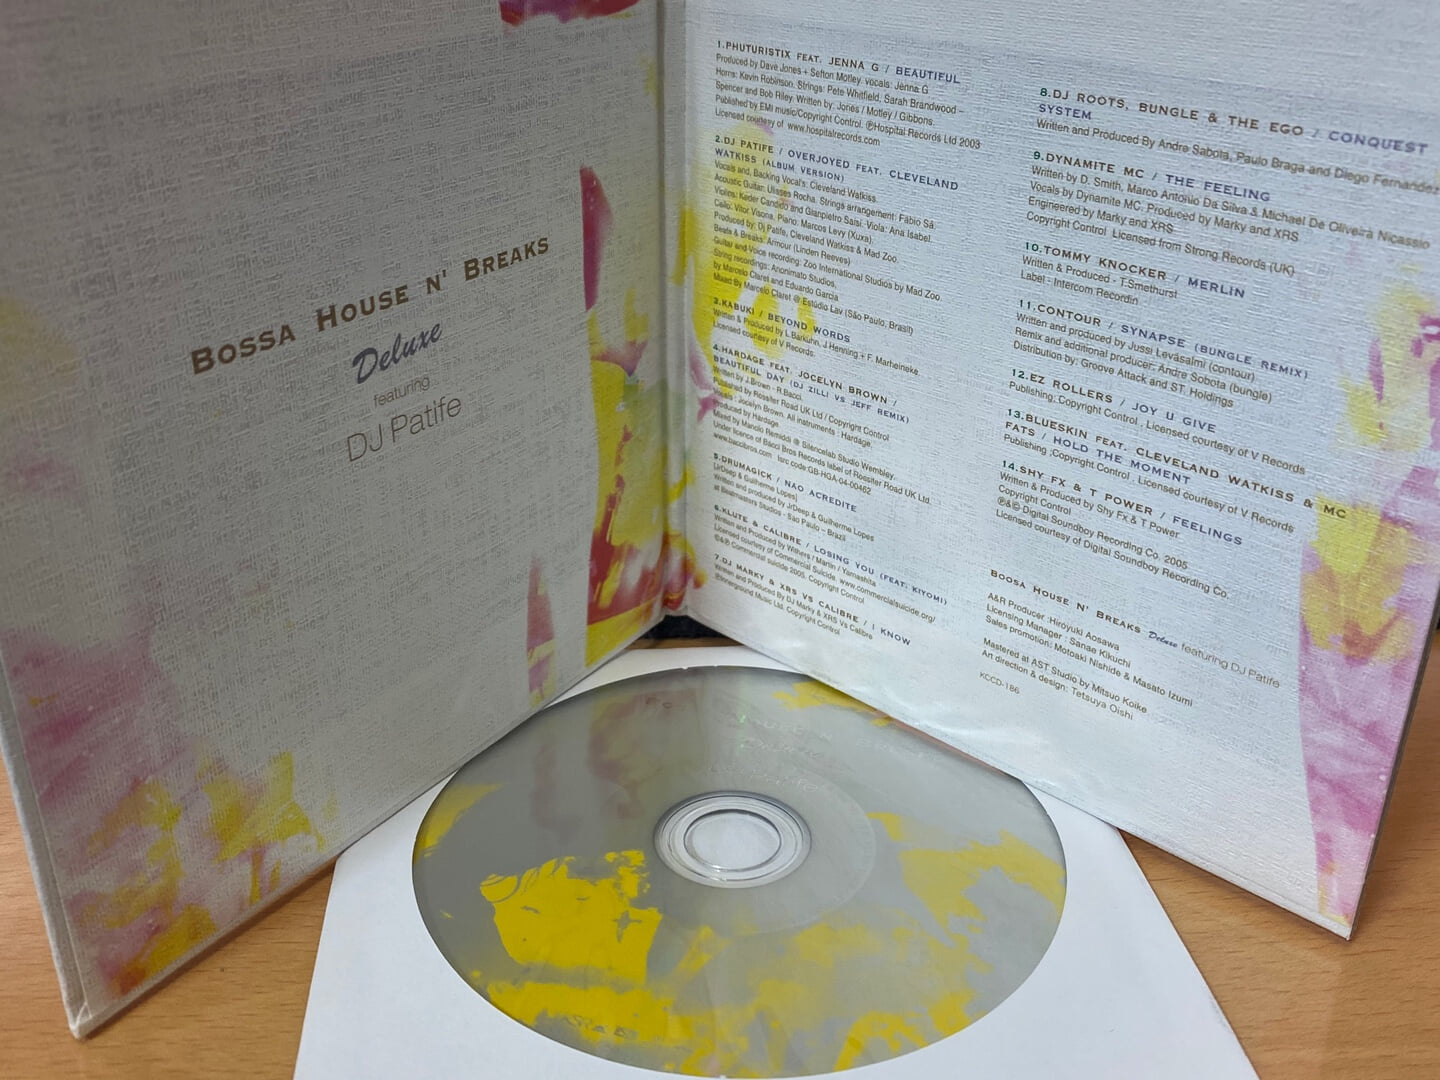 보사 하우스 앤 브레이크스 디럭스 - Bossa House N' Breaks Deluxe [일본발매] 